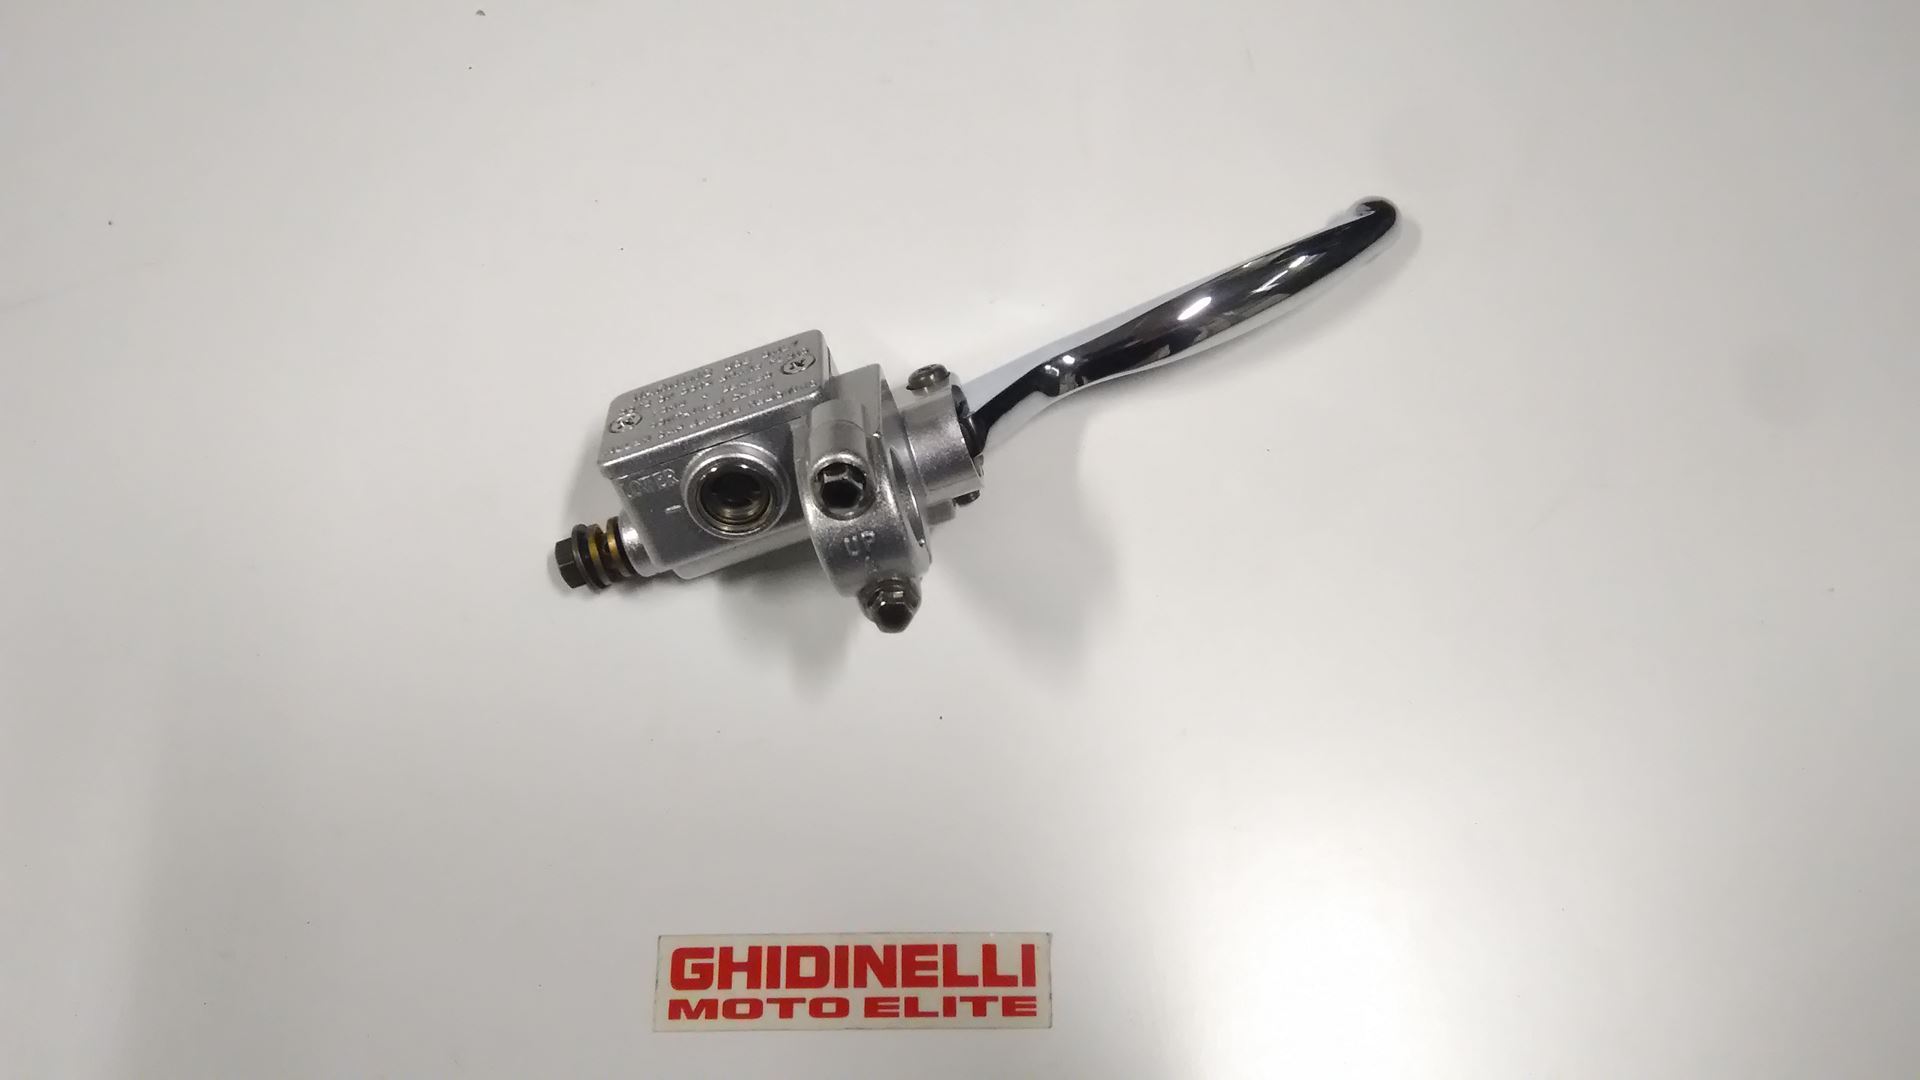 Ghidinelli Moto Elite. pompa freno anteriore beta r 125